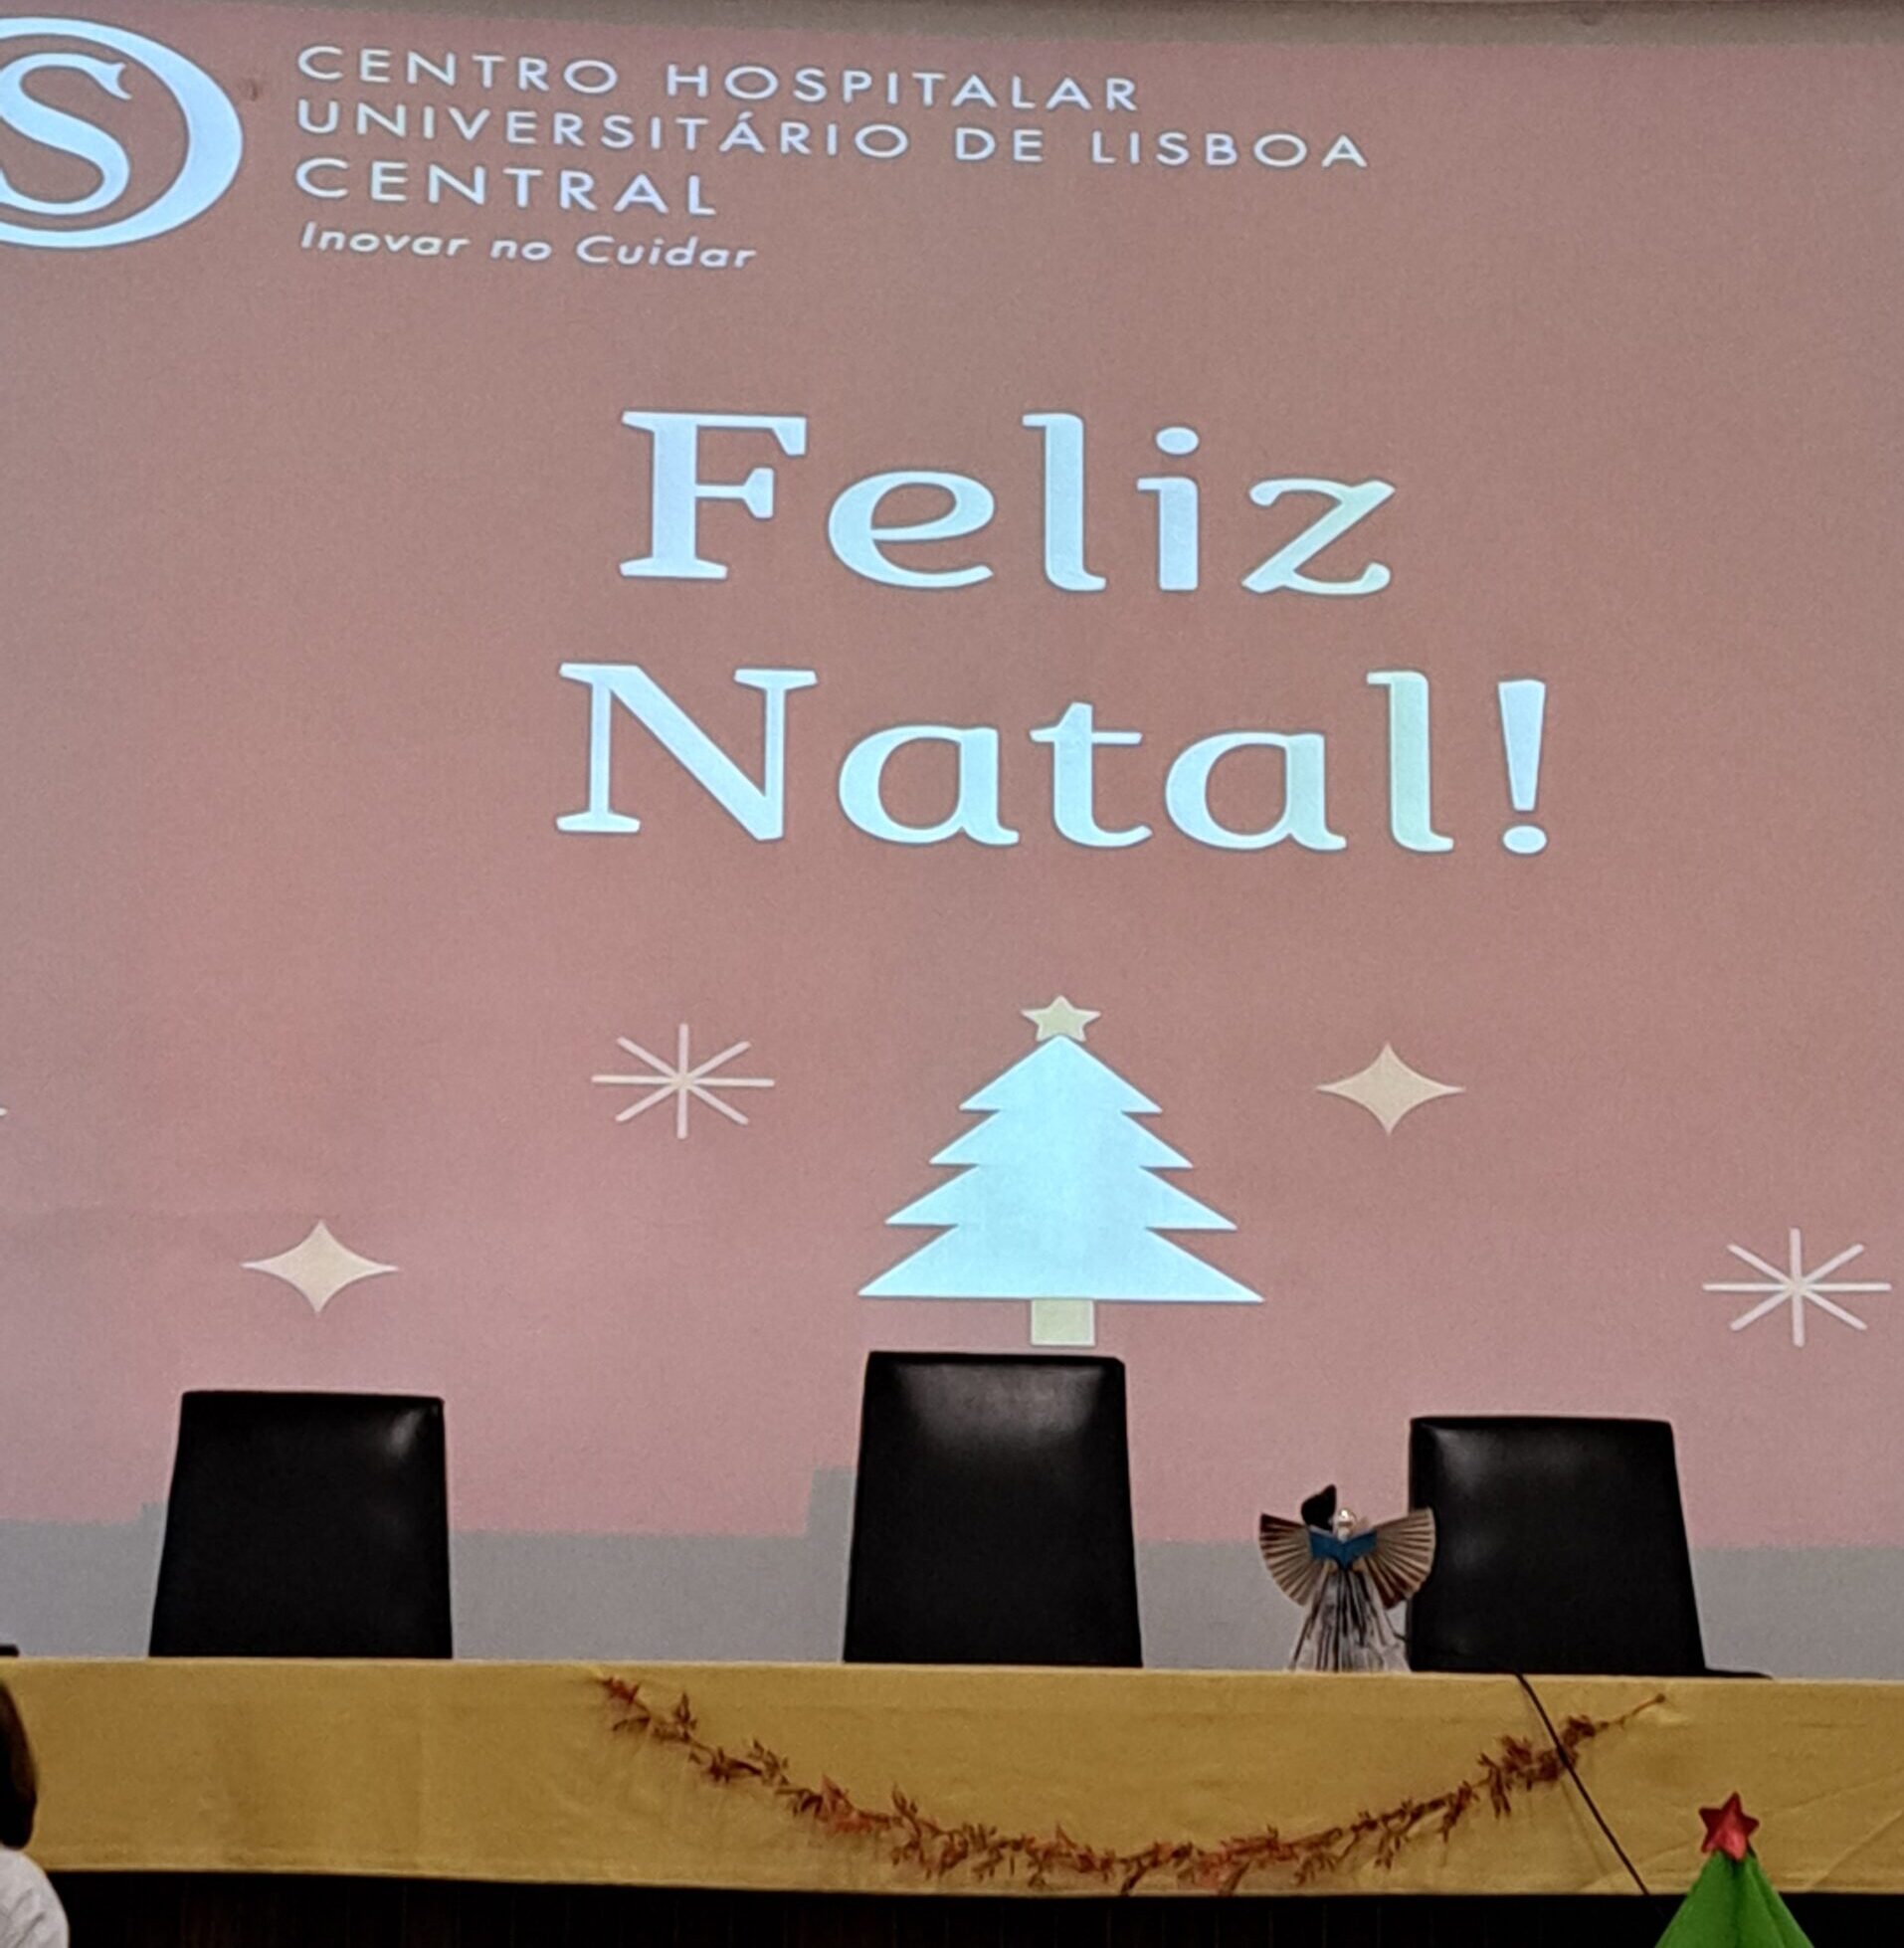 Slide com a mensagem Feliz Natal e motivos natalício (árvore e estrelas estilizadas)